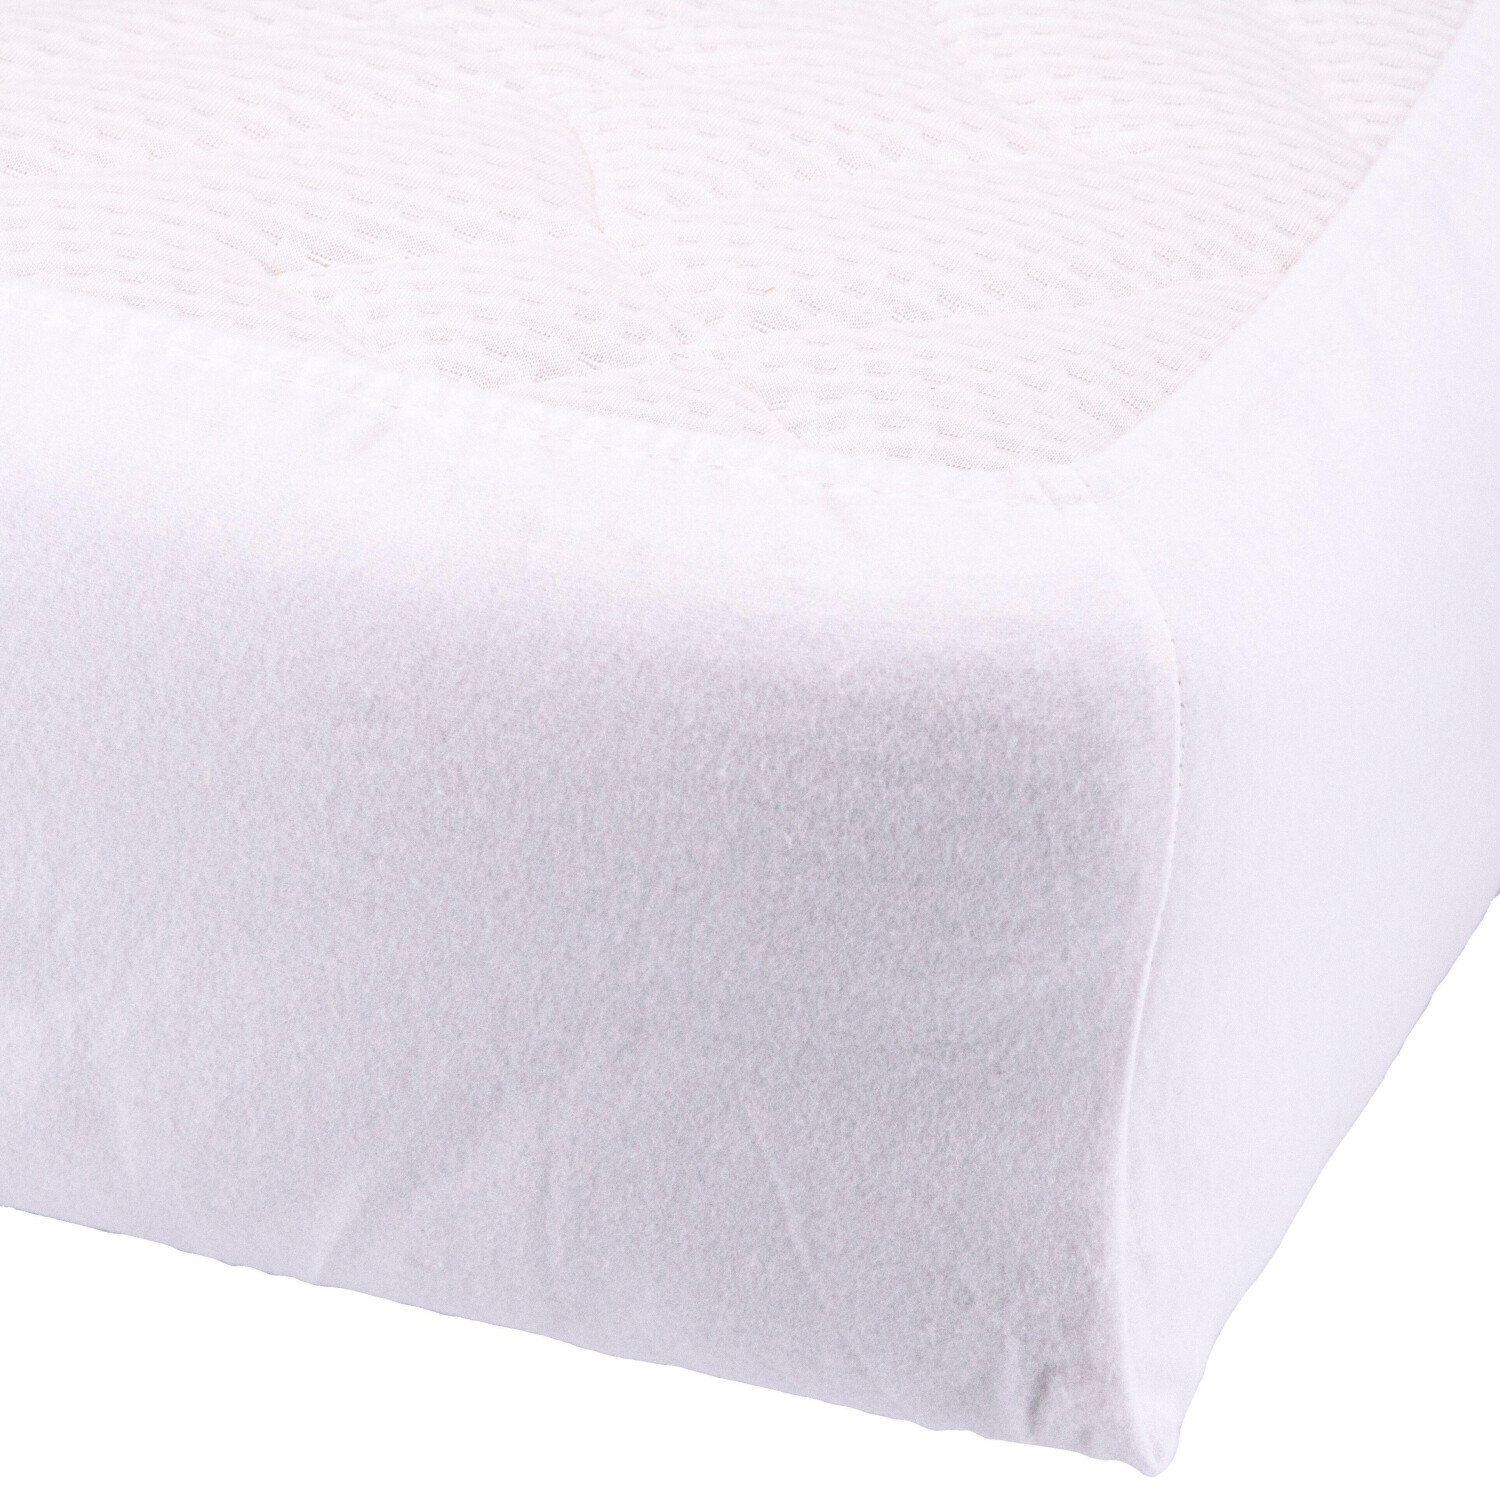 Setex Matratzenauflage Molton-Köper 100 x 200 cm weiß ab 24,99 € |  Preisvergleich bei